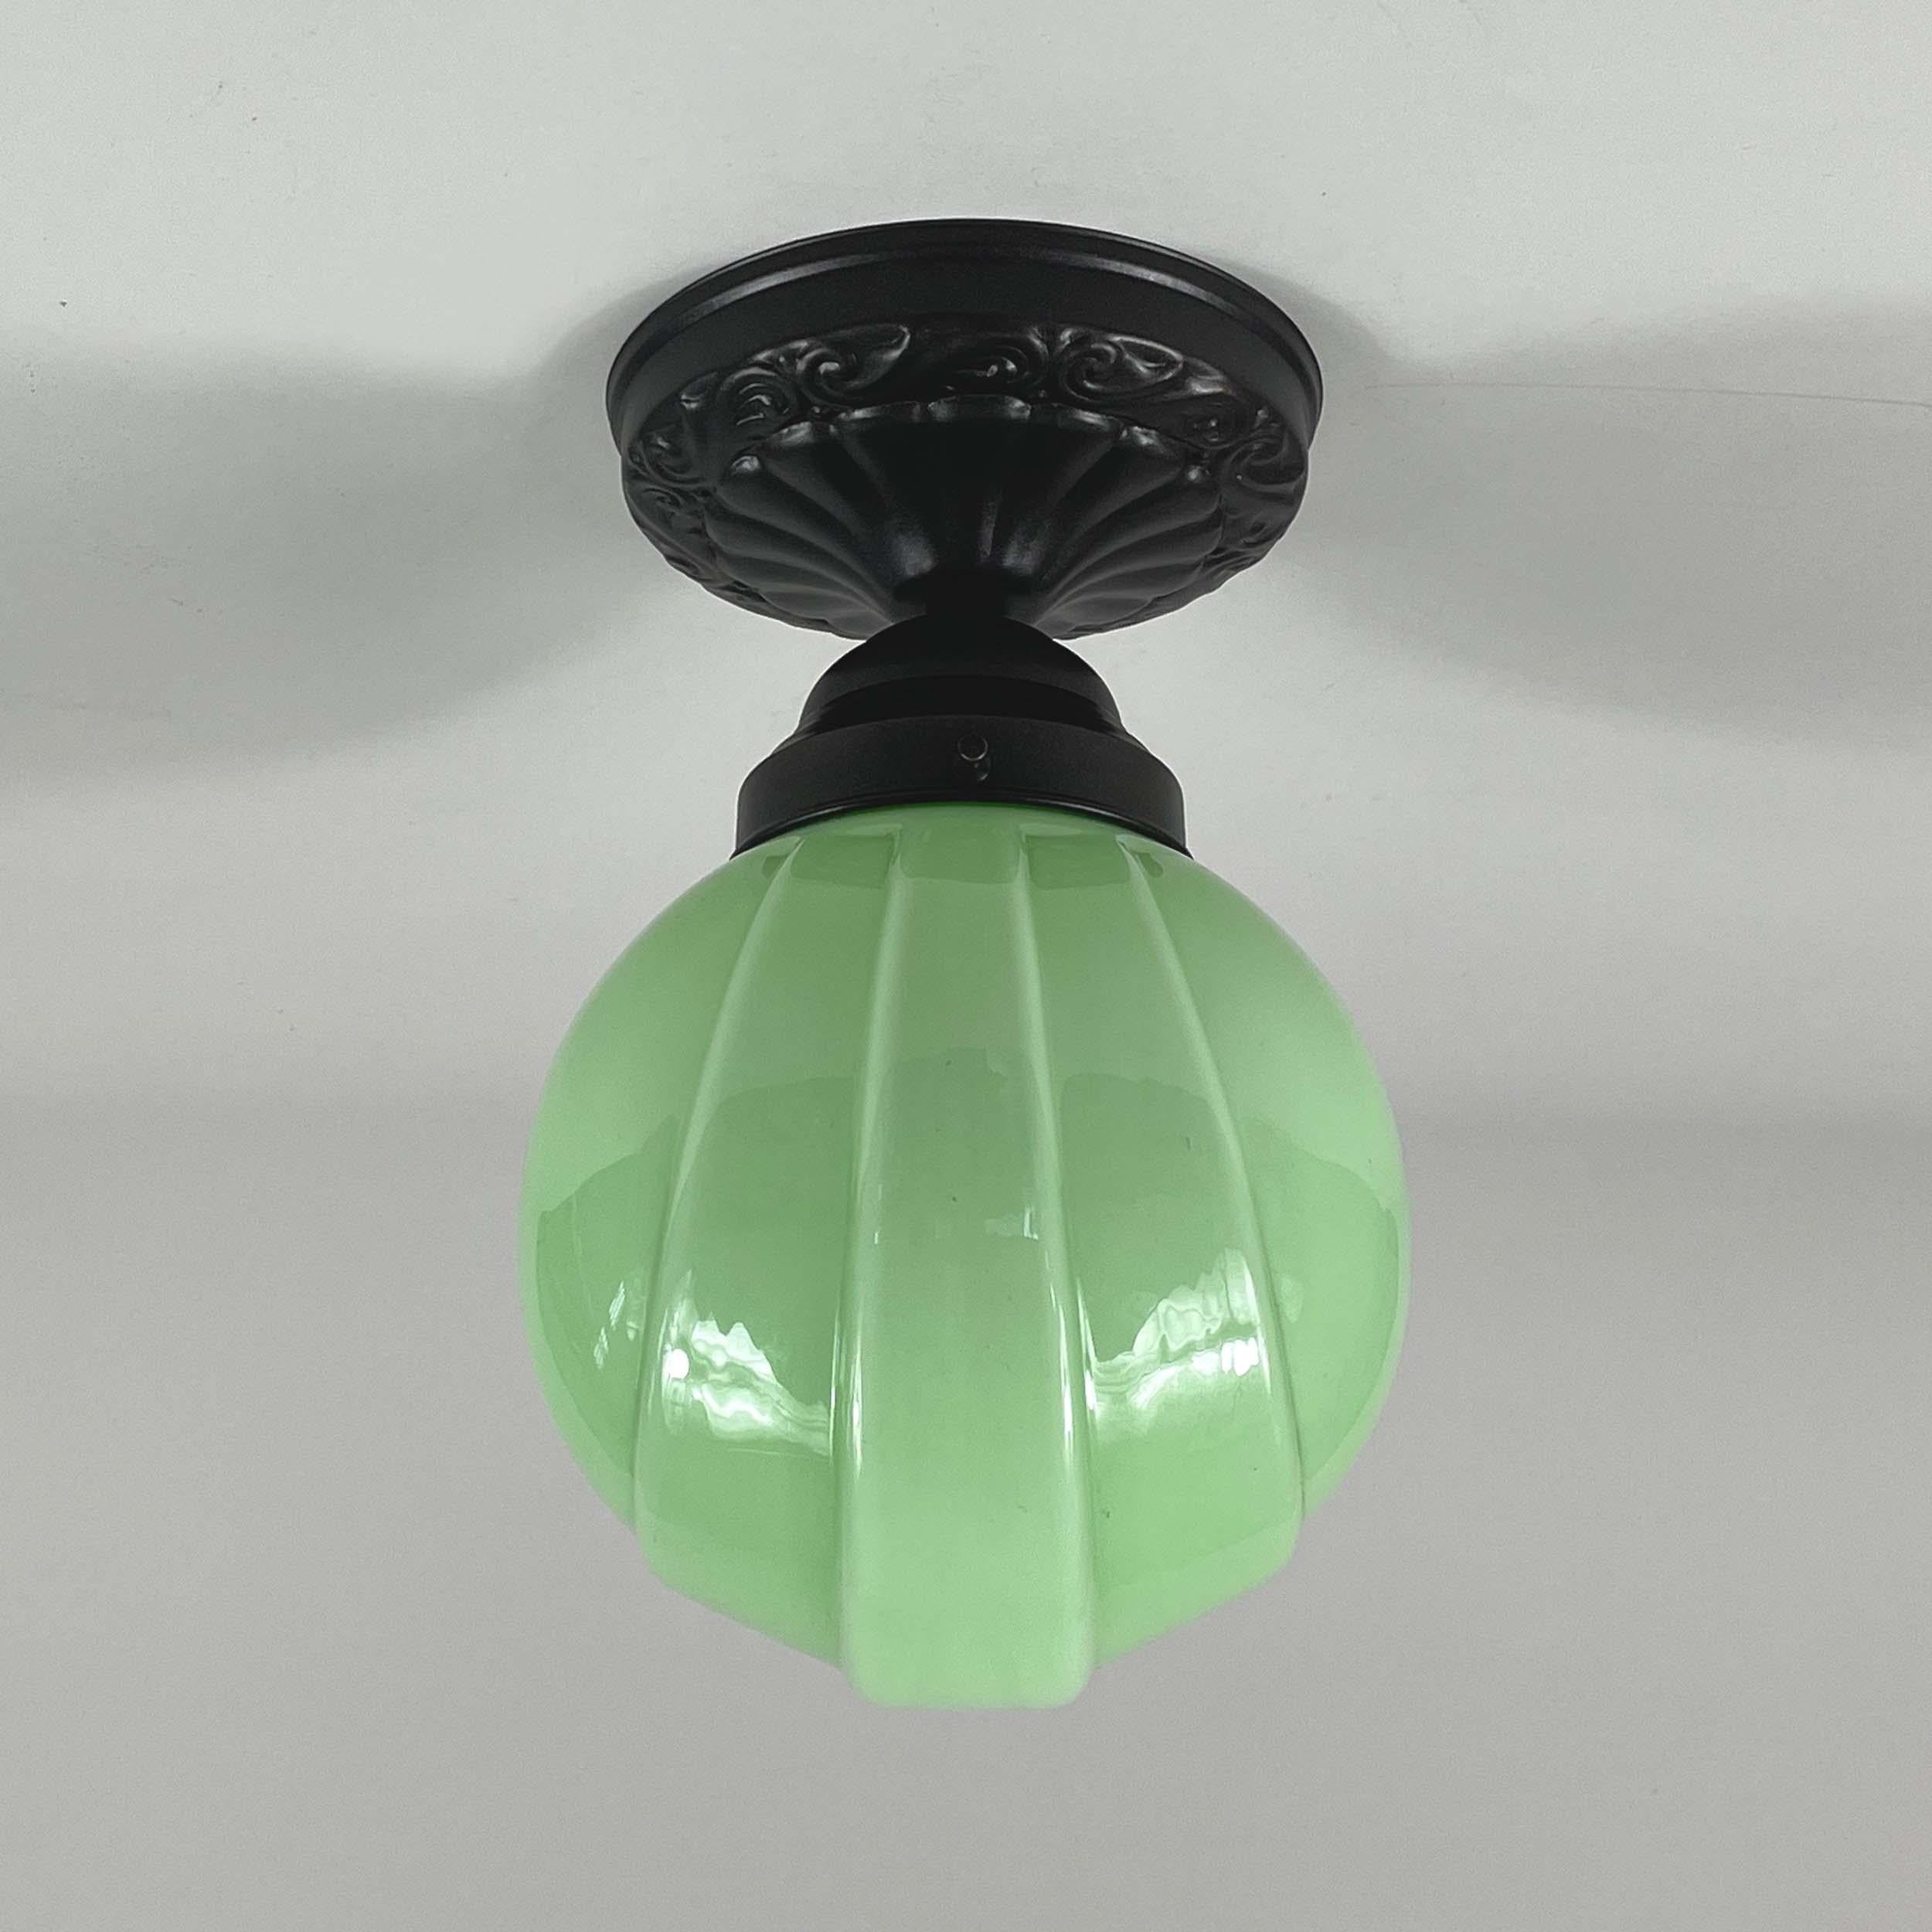 Diese Art-Déco-Unterputzleuchte wurde in den 1920er bis 1930er Jahren in Deutschland entworfen und hergestellt. Sie hat einen hellgrünen opalenen Lampenschirm und bronzierte/brünierte Beschläge.

Die Leuchte benötigt eine E26 / E27 Glühbirne (LED